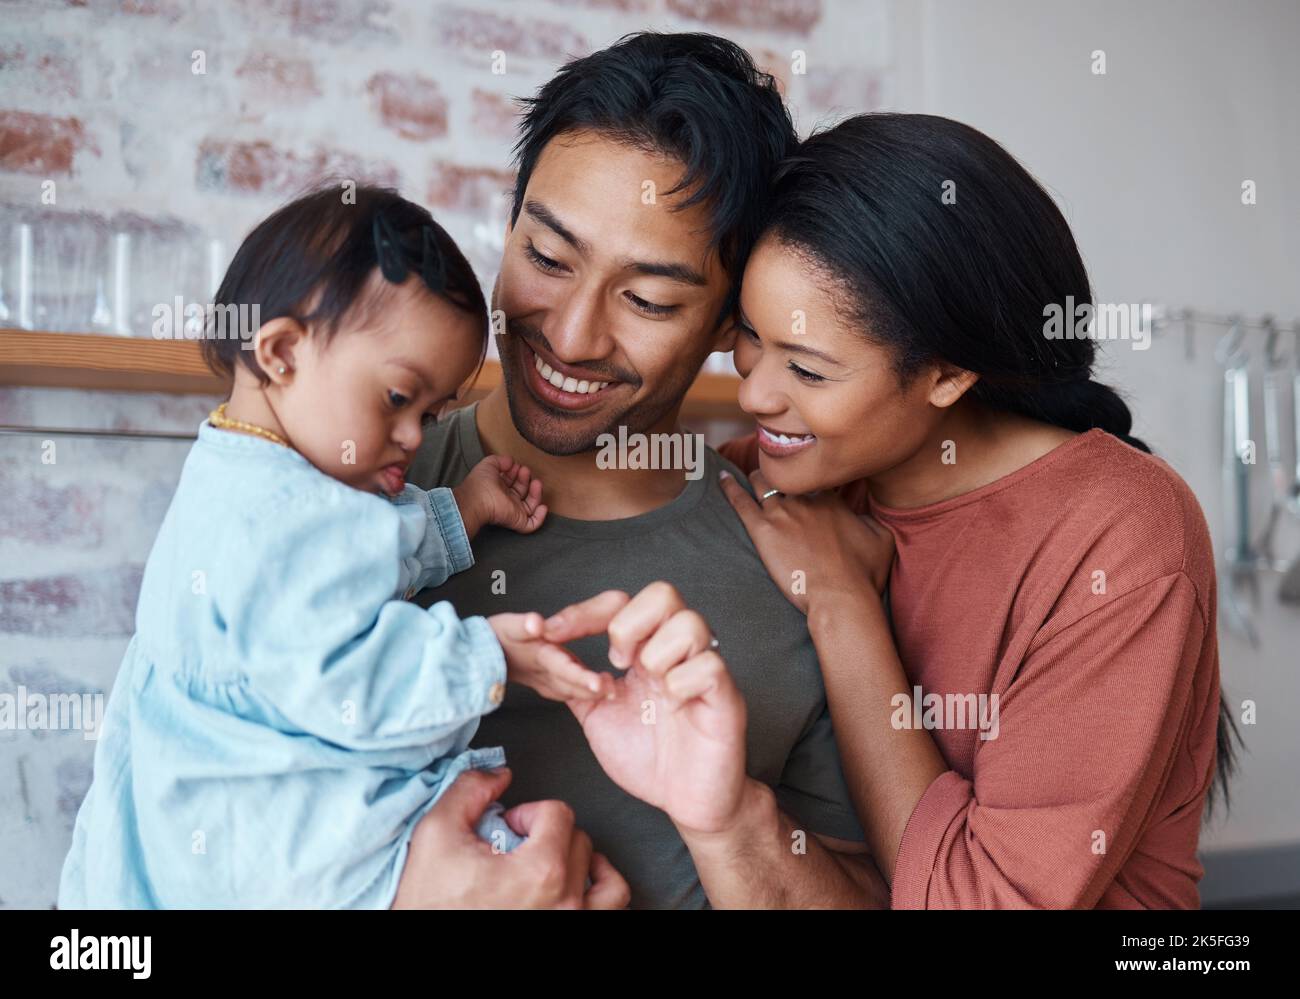 Famille avec le syndrome de Down bébé, parents heureux dans la cuisine maison ensemble et garde de jeunes enfants. Père indien tenant un enfant mignon, mère asiatique sourire avec Banque D'Images